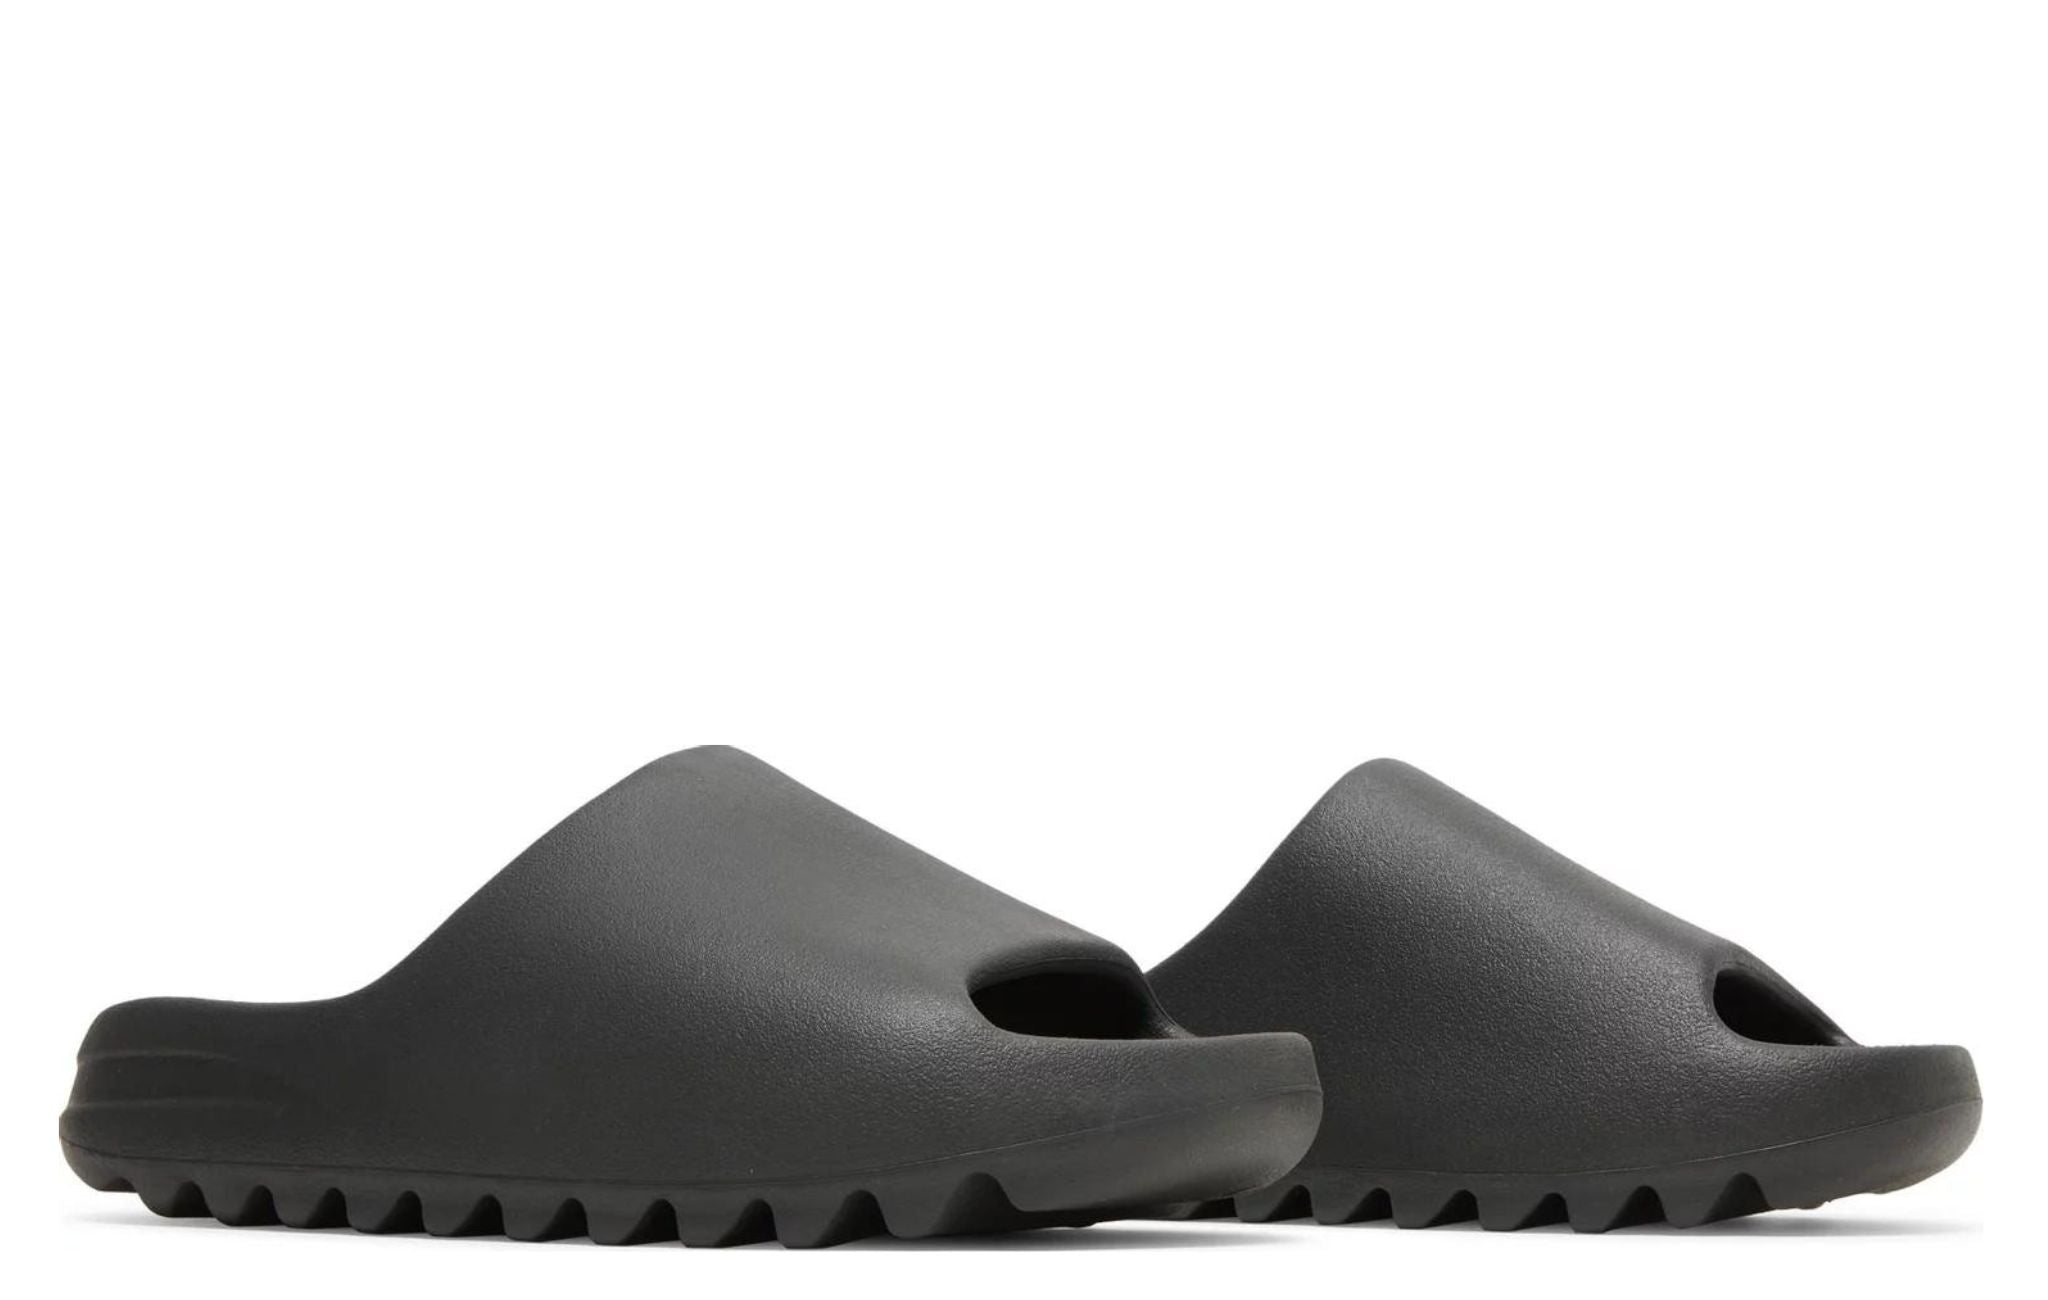 Adidas Yeezy Slides 'Onyx' - HYPEMARKET